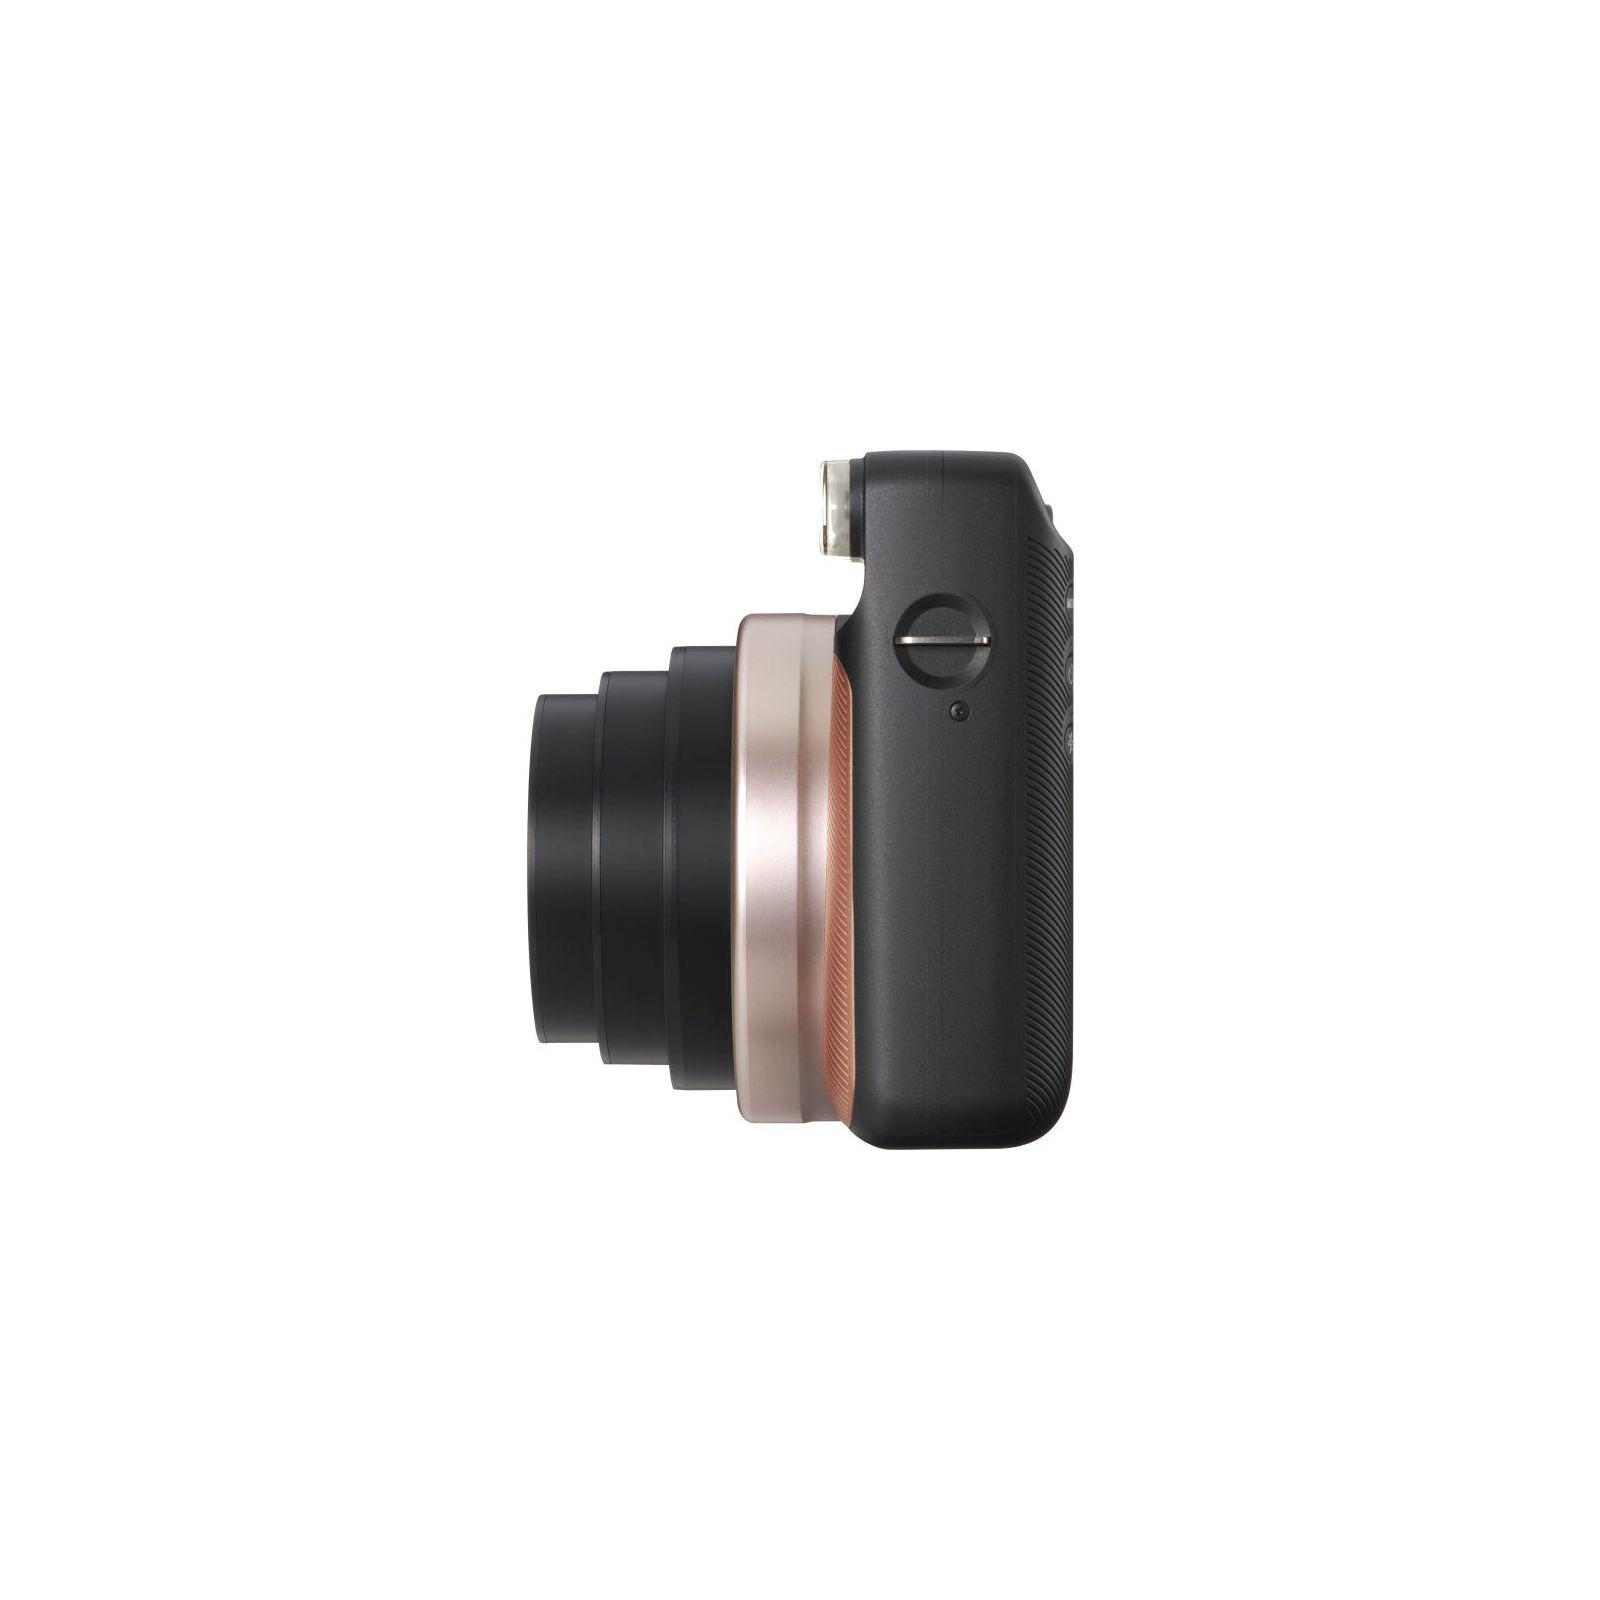 Камера моментальной печати Fujifilm Instax SQUARE SQ 6 BLUSH GOLD EX D (16581408) изображение 5